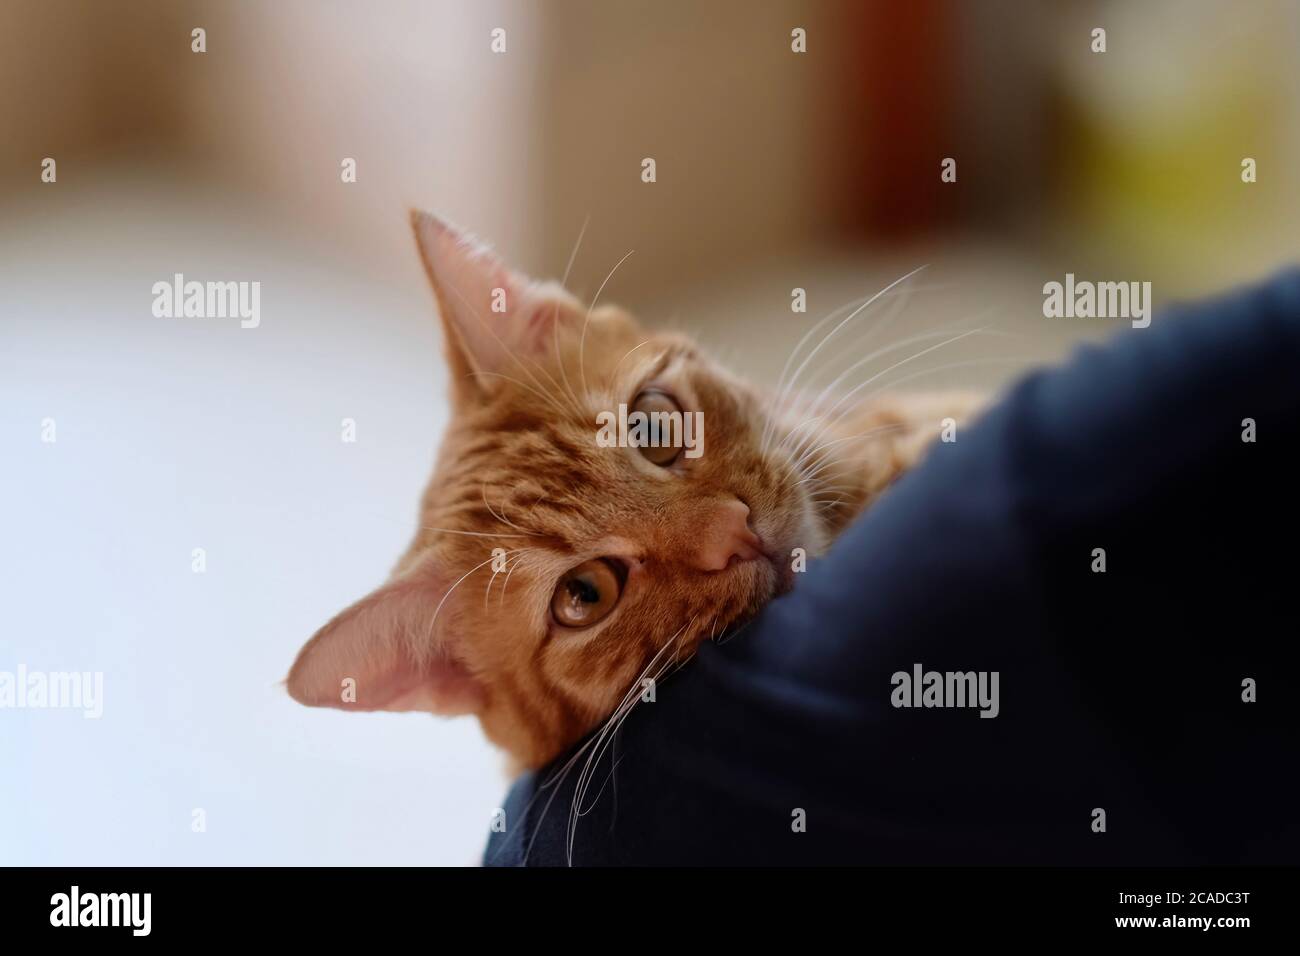 gros plan d'un chat tabby marron dans le bras des gens. Regarder l'appareil photo. Flou arrière-plan lumineux Banque D'Images